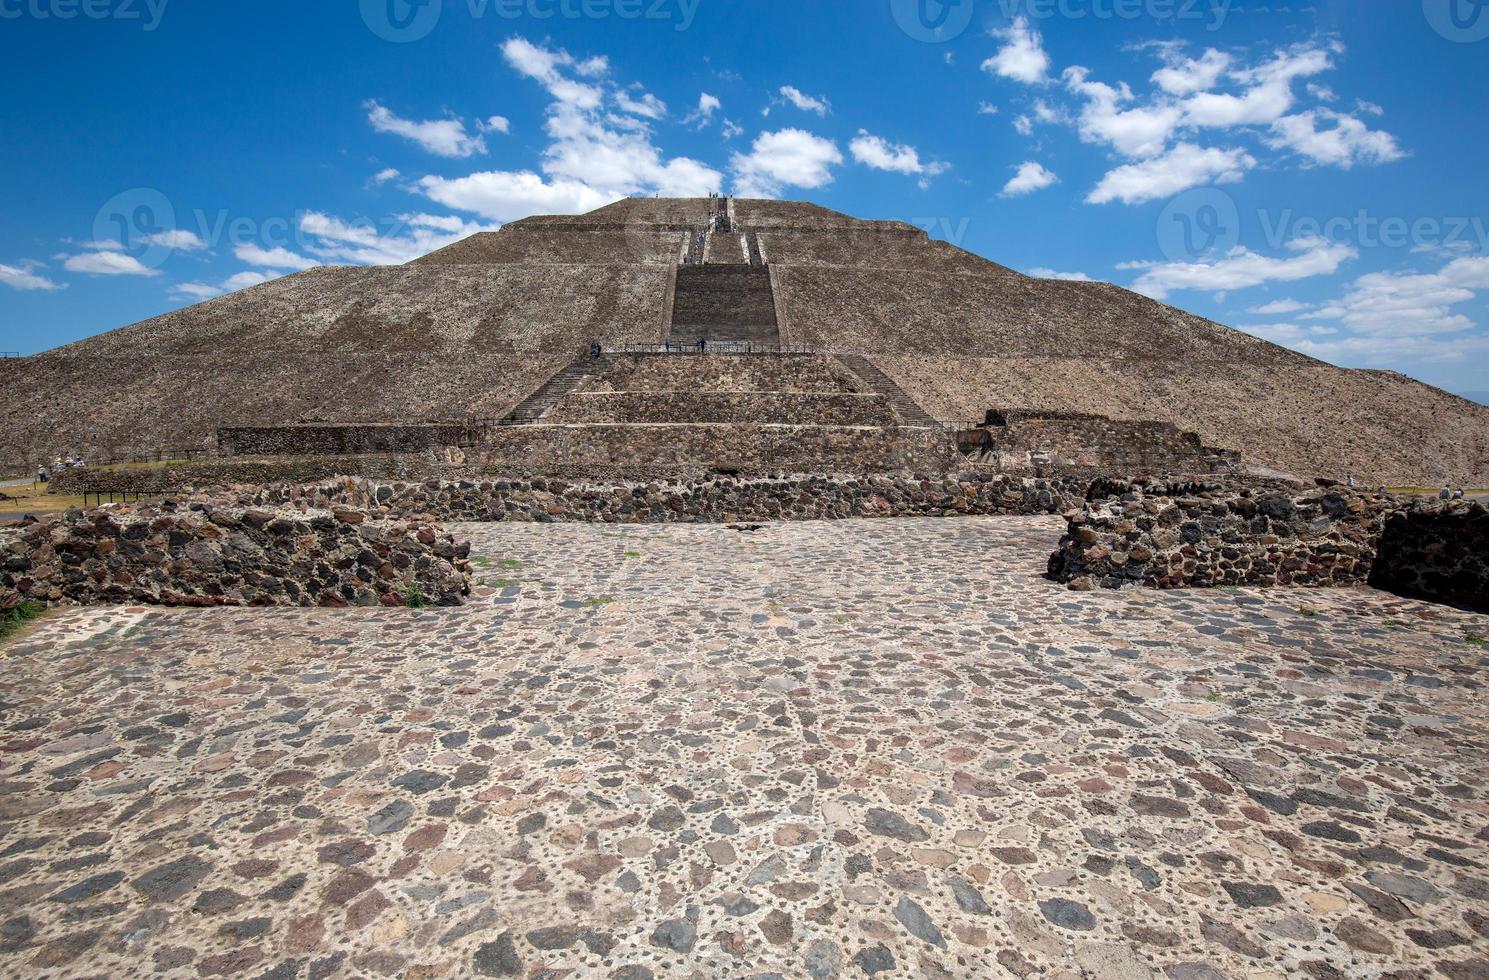 complexe de pyramides de teotihuacan historique situé dans les hautes terres mexicaines et la vallée du mexique près de la ville de mexico photo